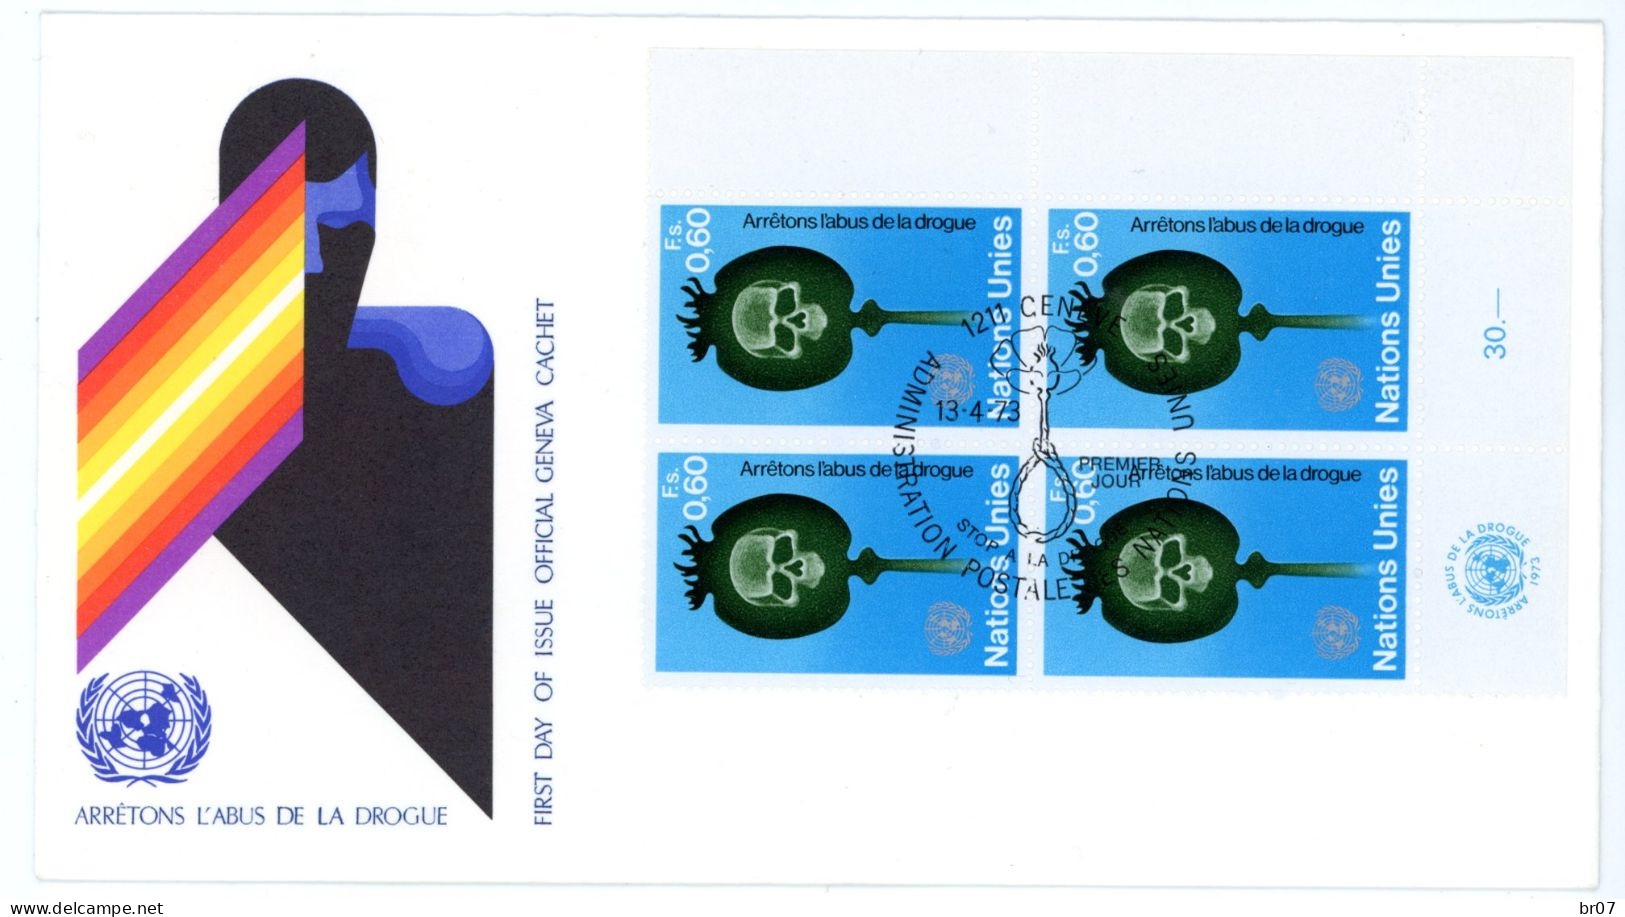 NATIONS UNIES GENEVE +30 X LETTRE PREMIER JOUR & ENTIER 1966 1972 SCANS INDIVIDUELS POIDS 135g AVANT EMBALLAGE - Storia Postale